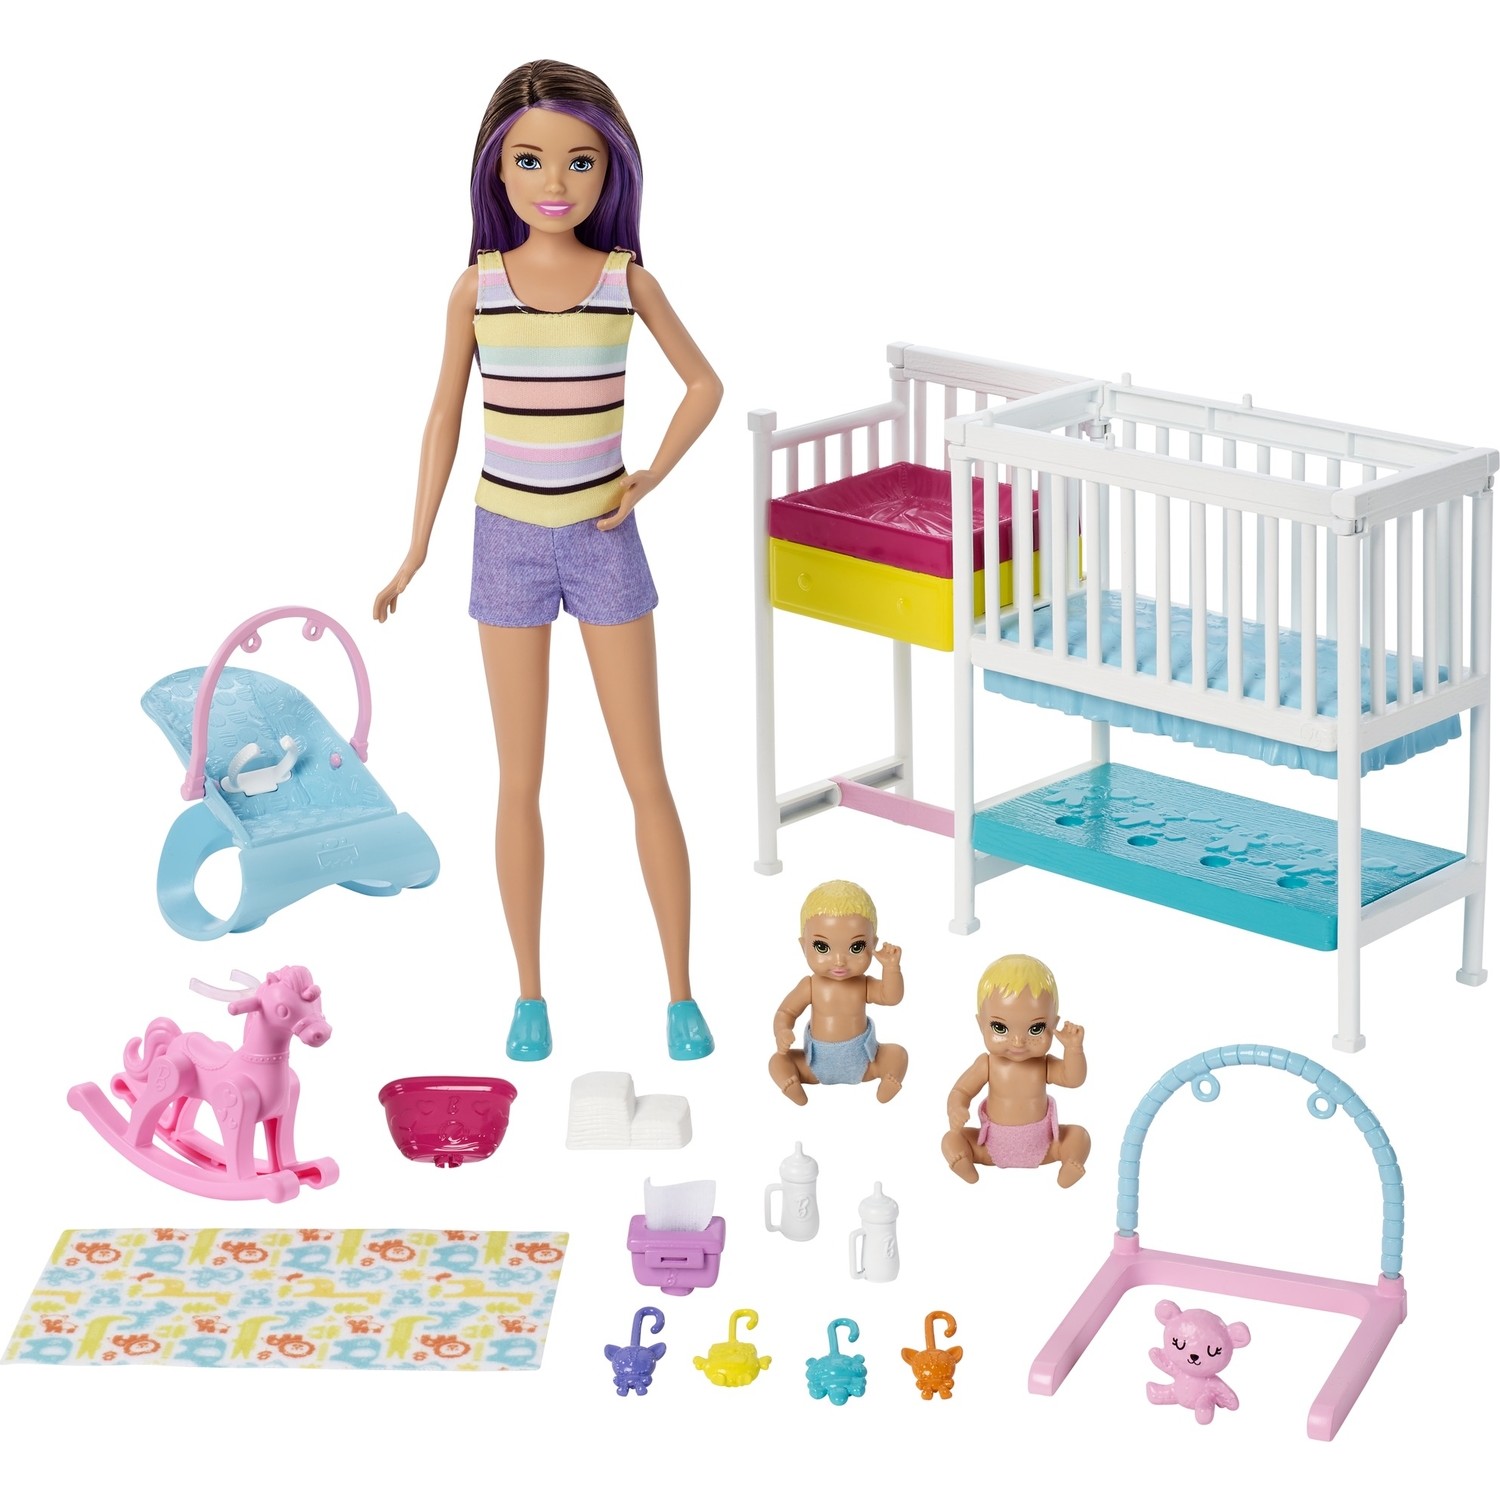 Игровой набор Barbie Skipper Babysitters игровой набор barbie коллекция одежды 2 наряда